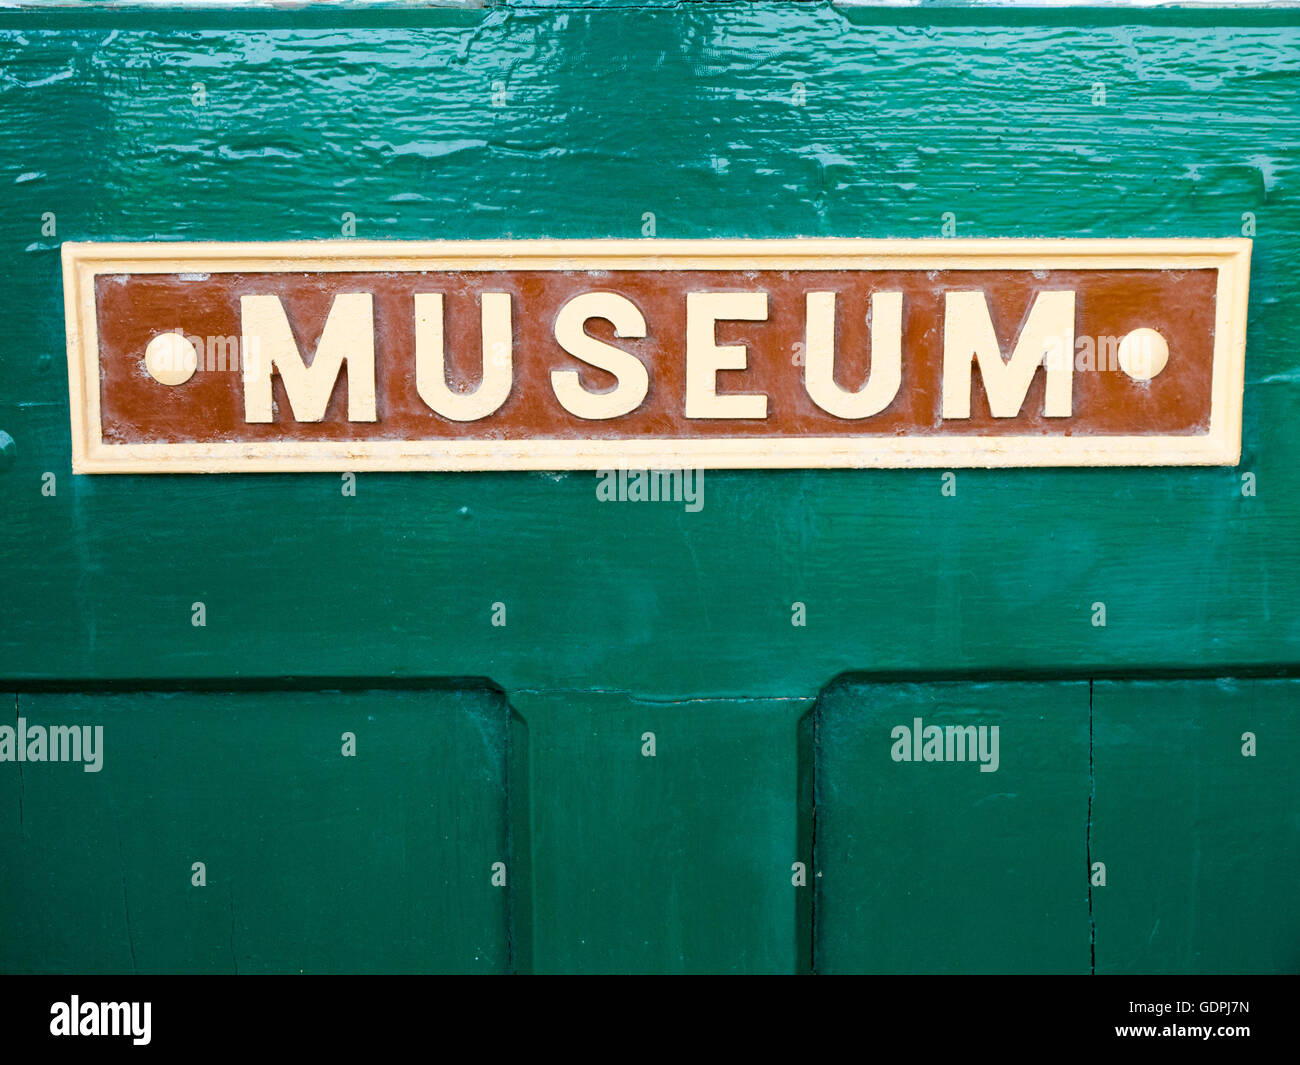 Museum sign on green door UK Stock Photo